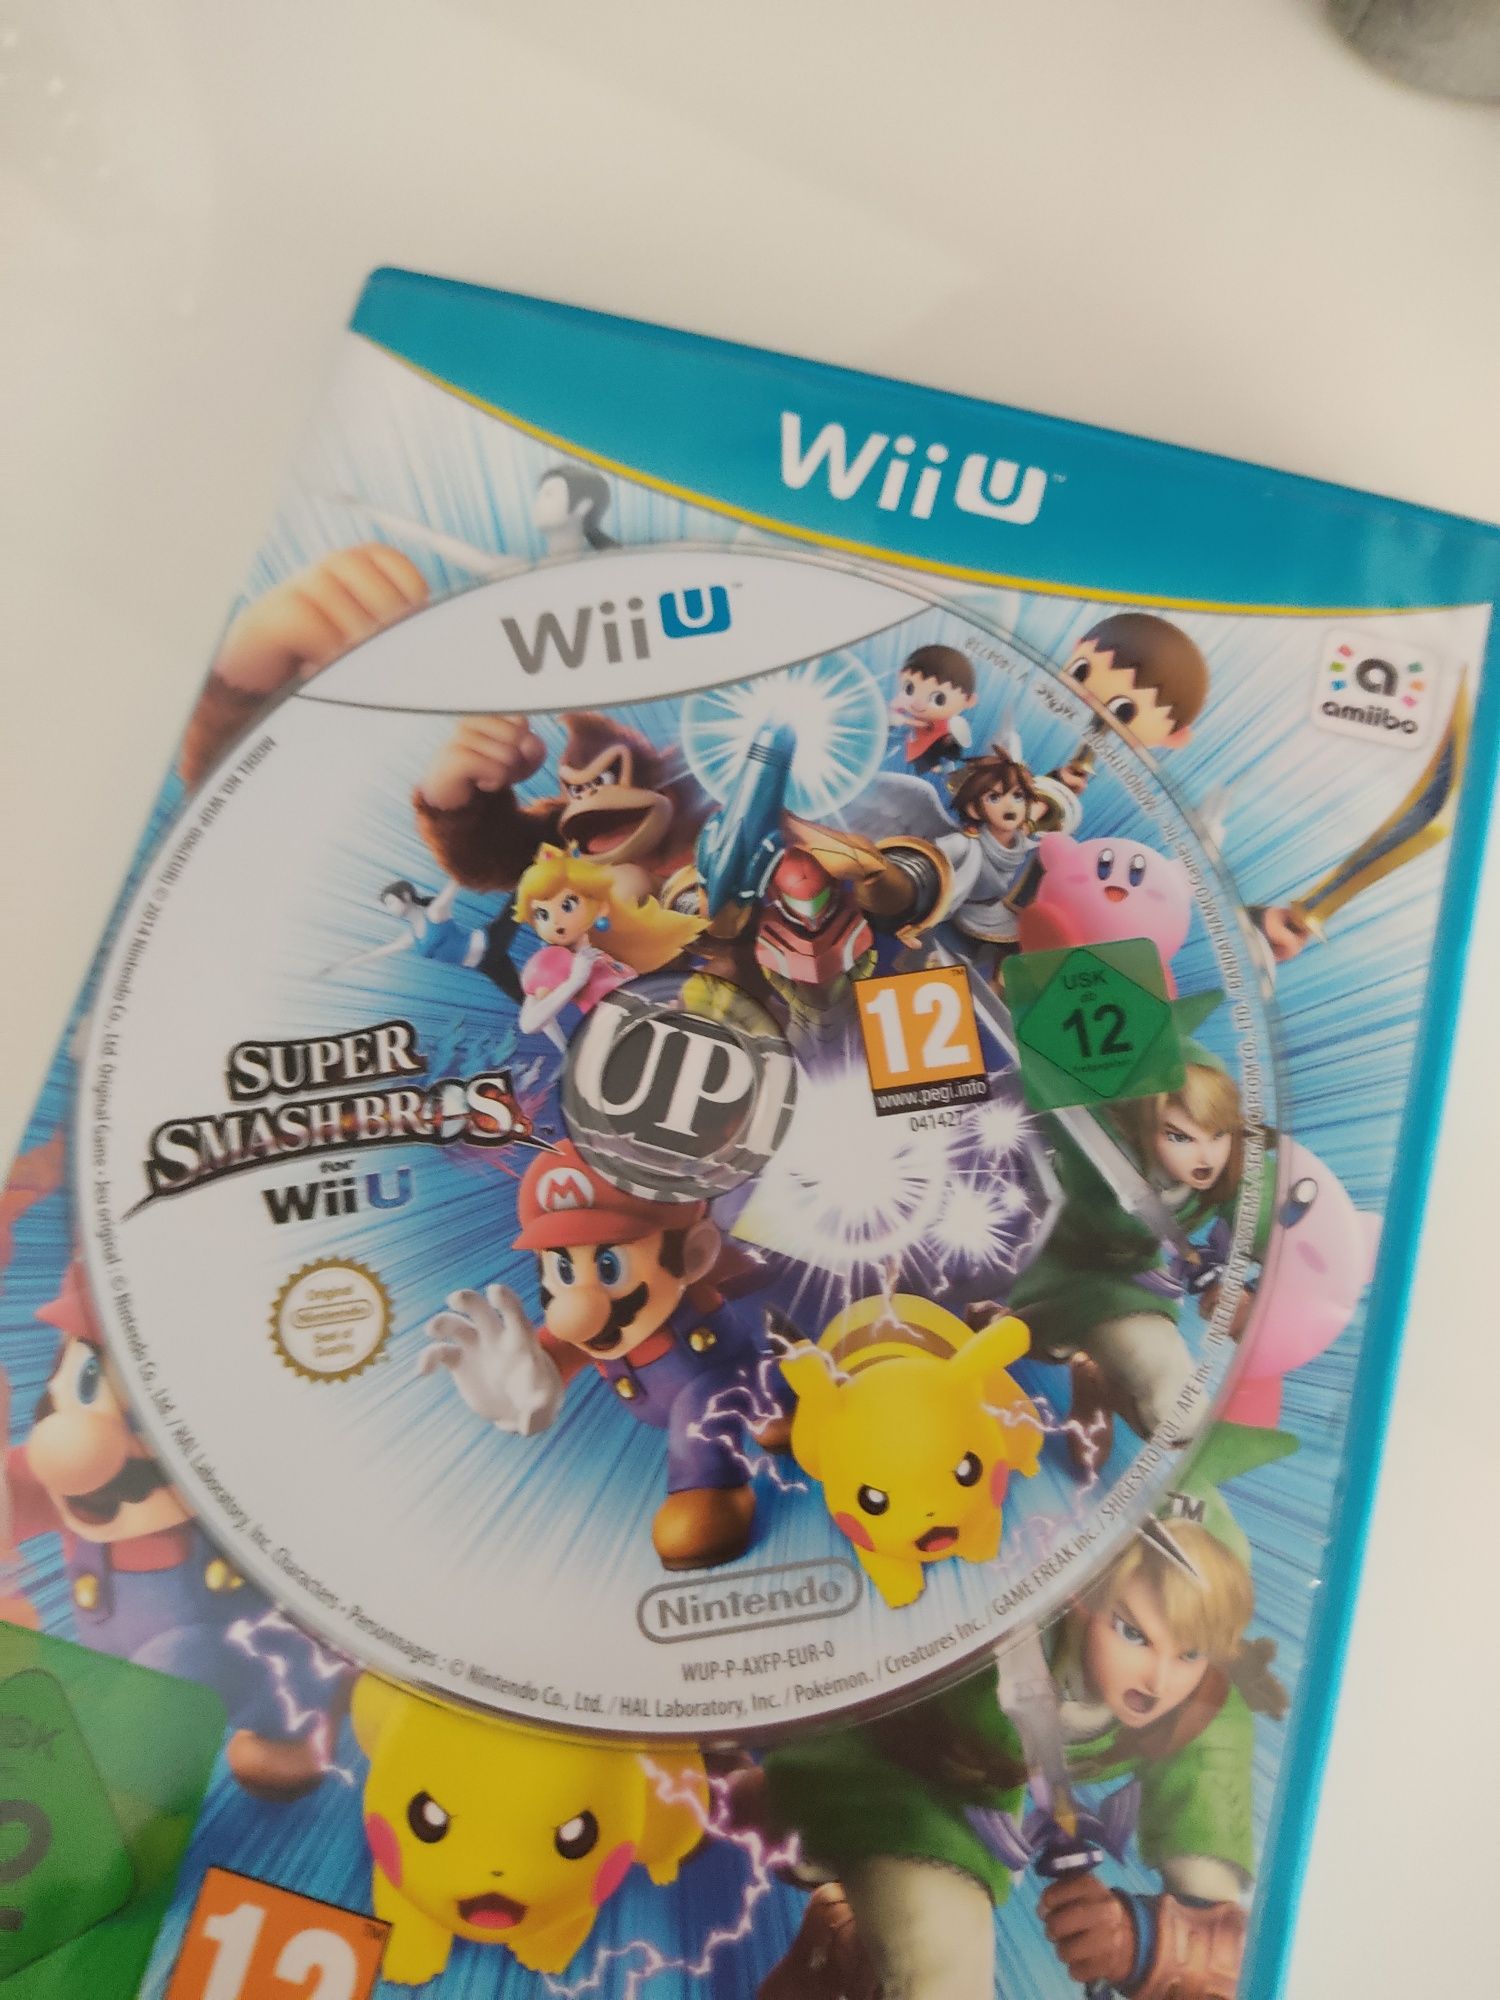 Super smash Bros Wii u edition